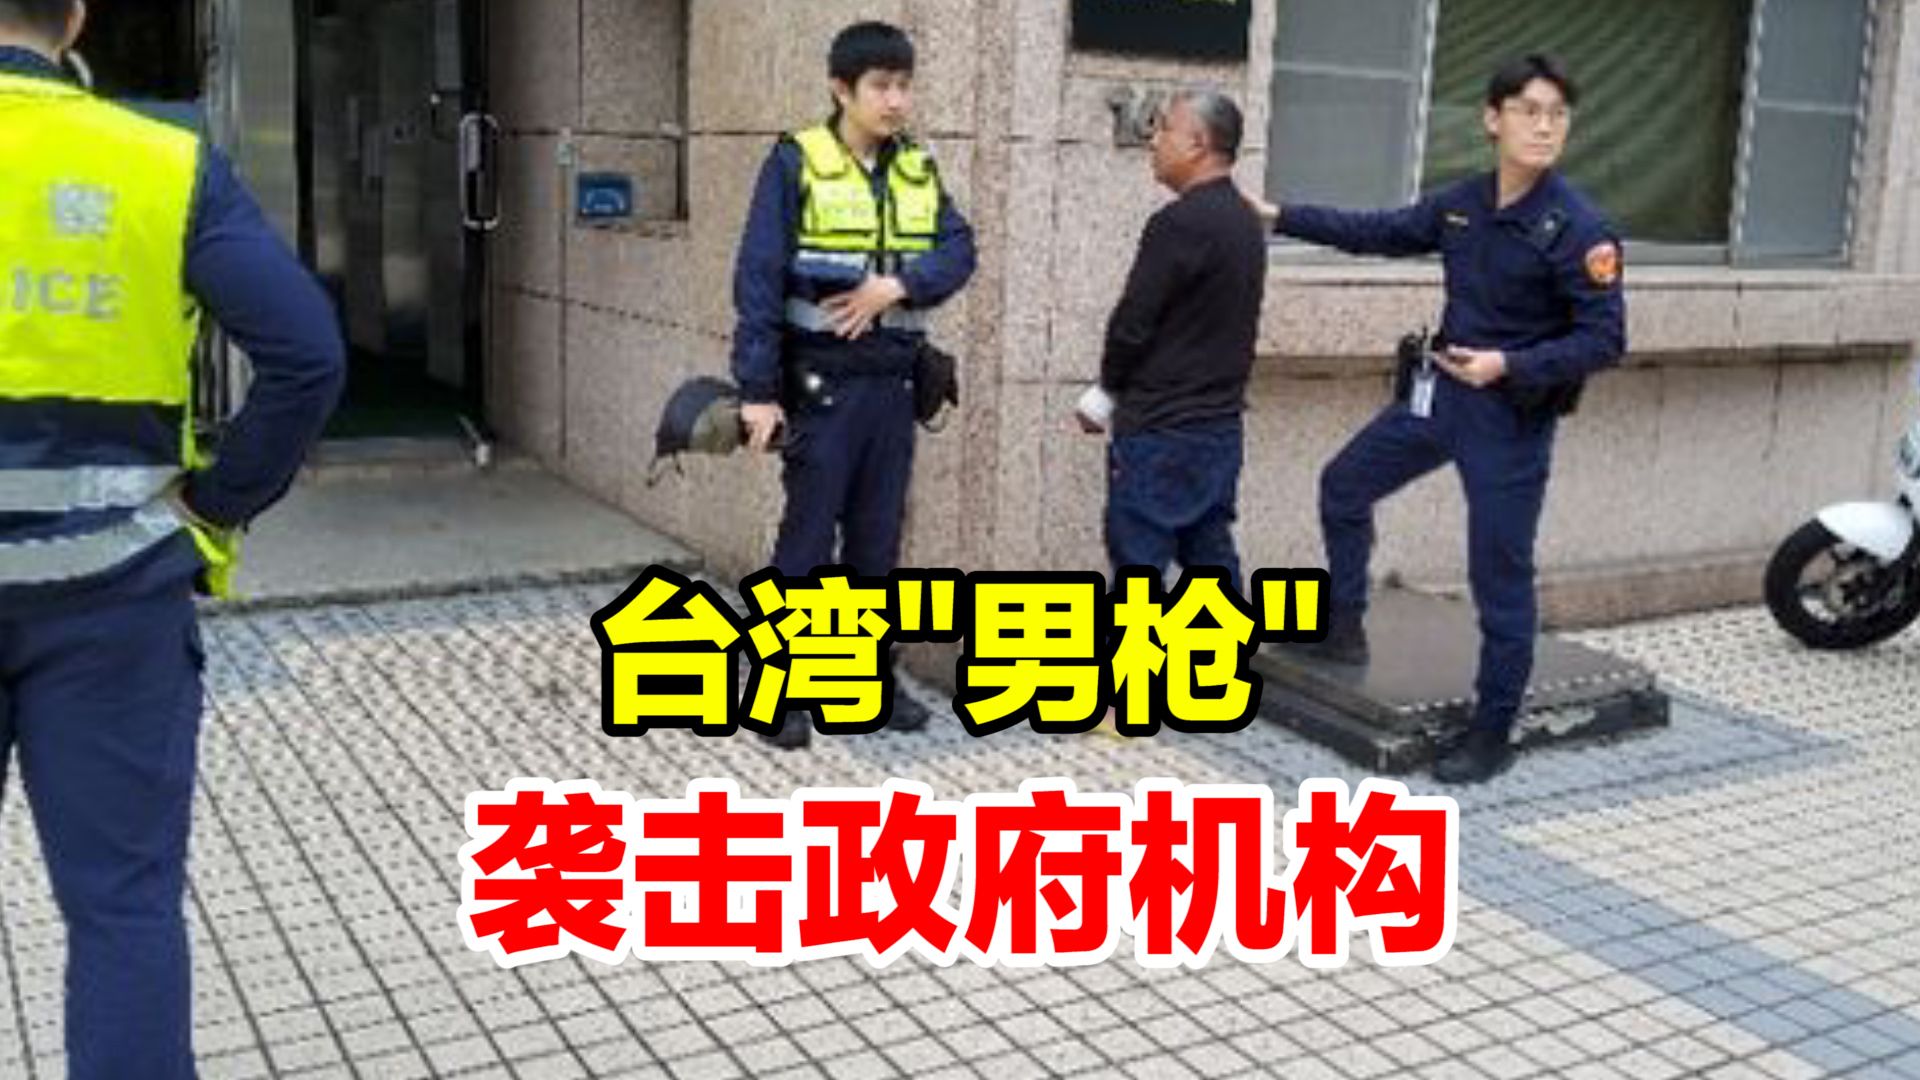 台湾54岁男子手持制式霰弹枪，朝“数位发展部”大门连轰三枪，称不满民进党当局施政